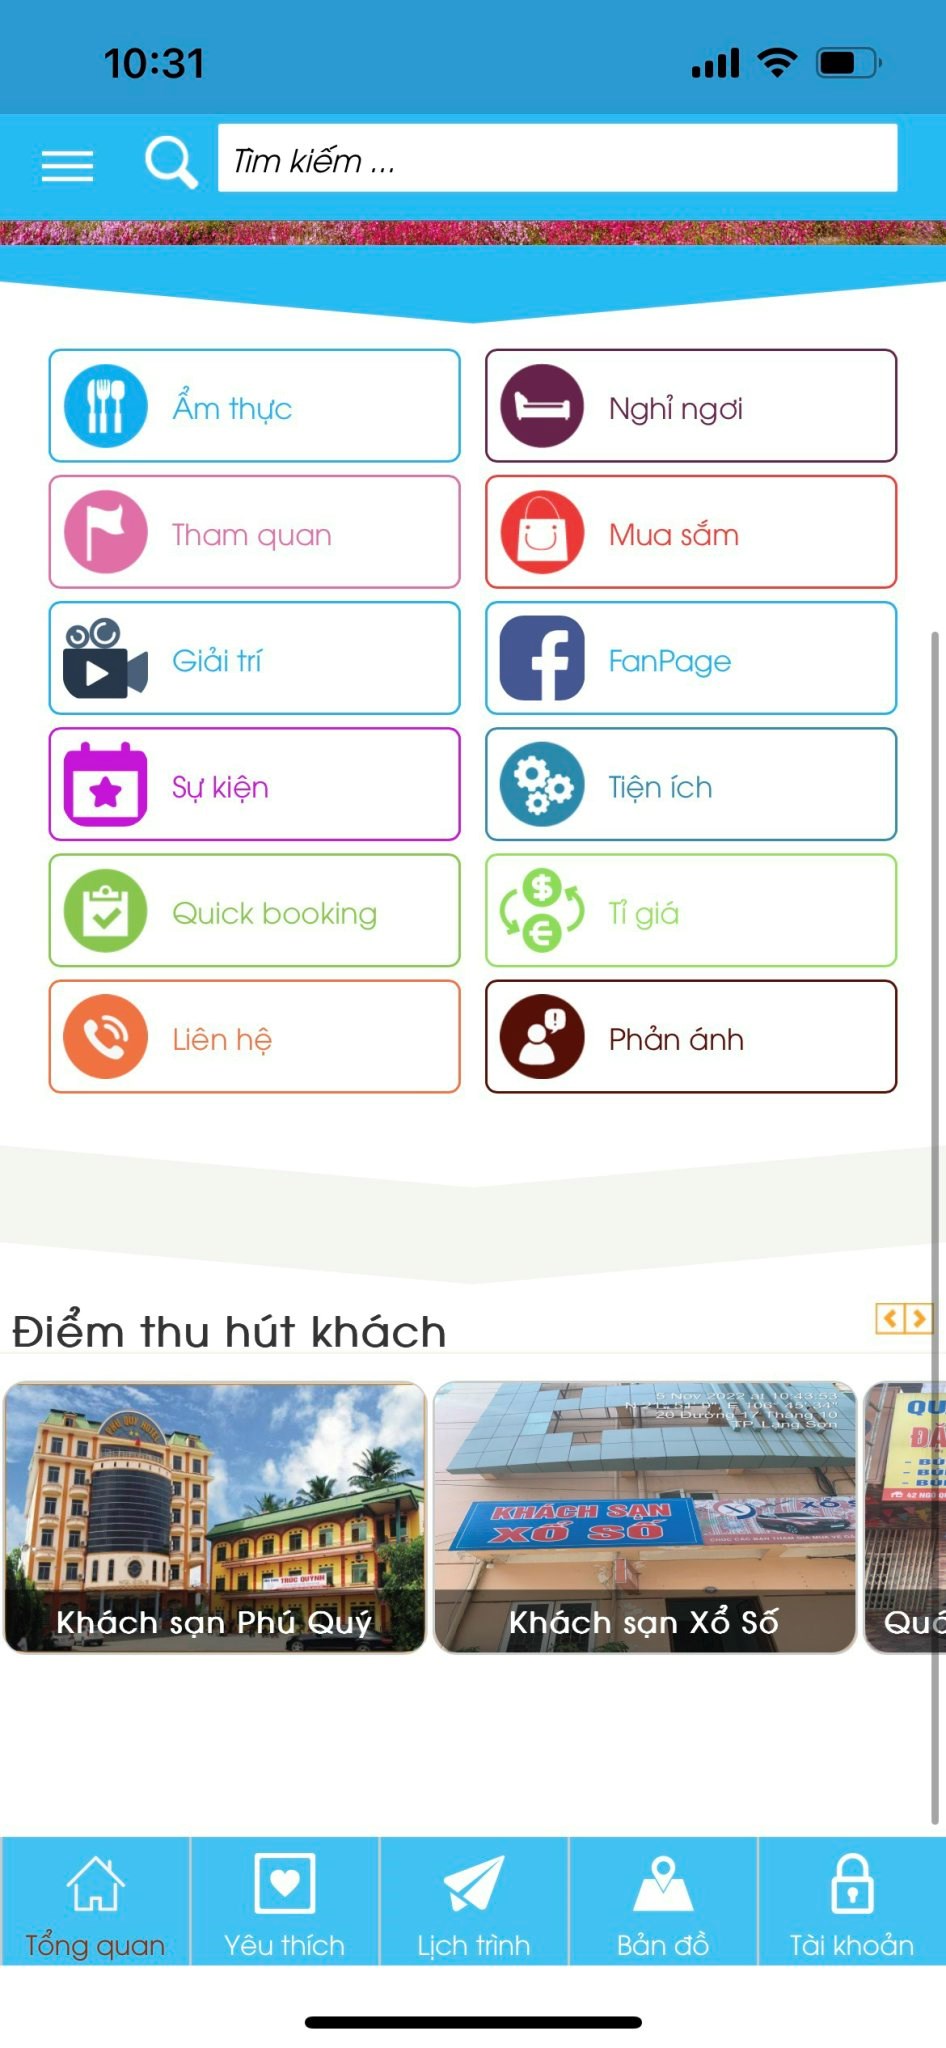 Lạng Sơn chuẩn bị ra mắt app du lịch Lang Son Tourism trên thiết bị di động - ảnh 1